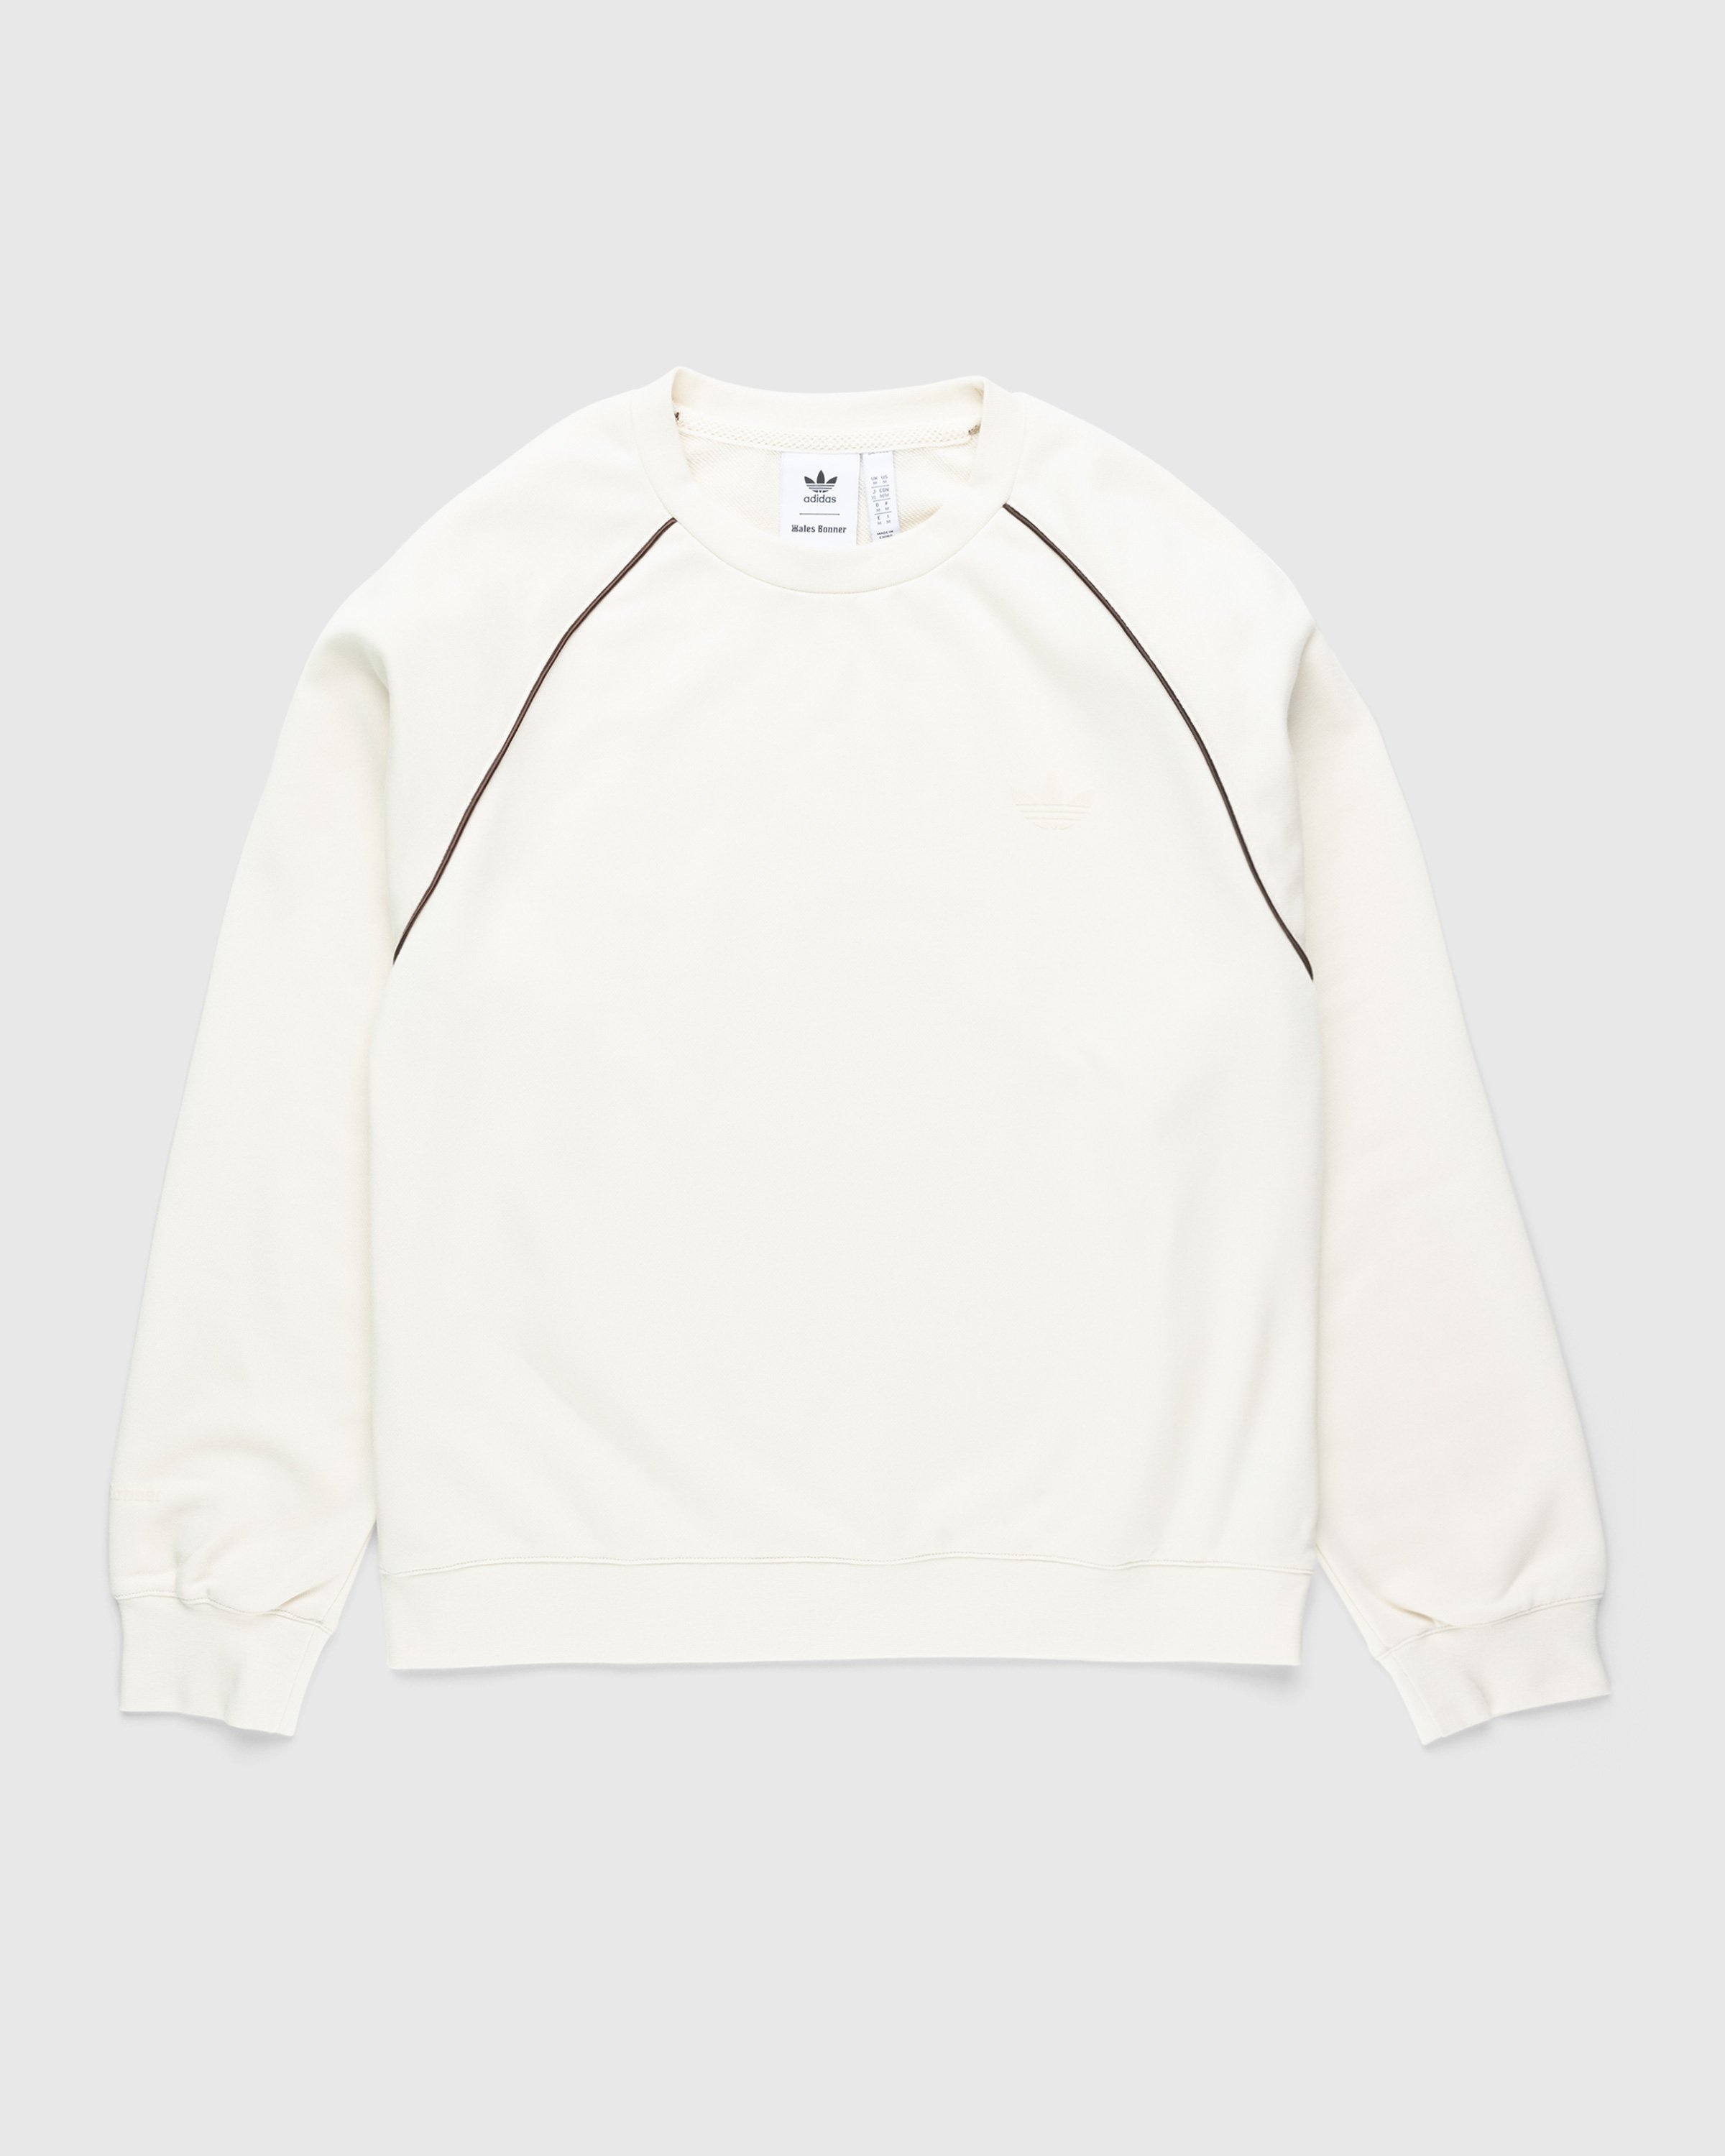 Adidas x Wales Bonner - Crewneck Sweater Wonder White - Clothing - Beige - Image 1